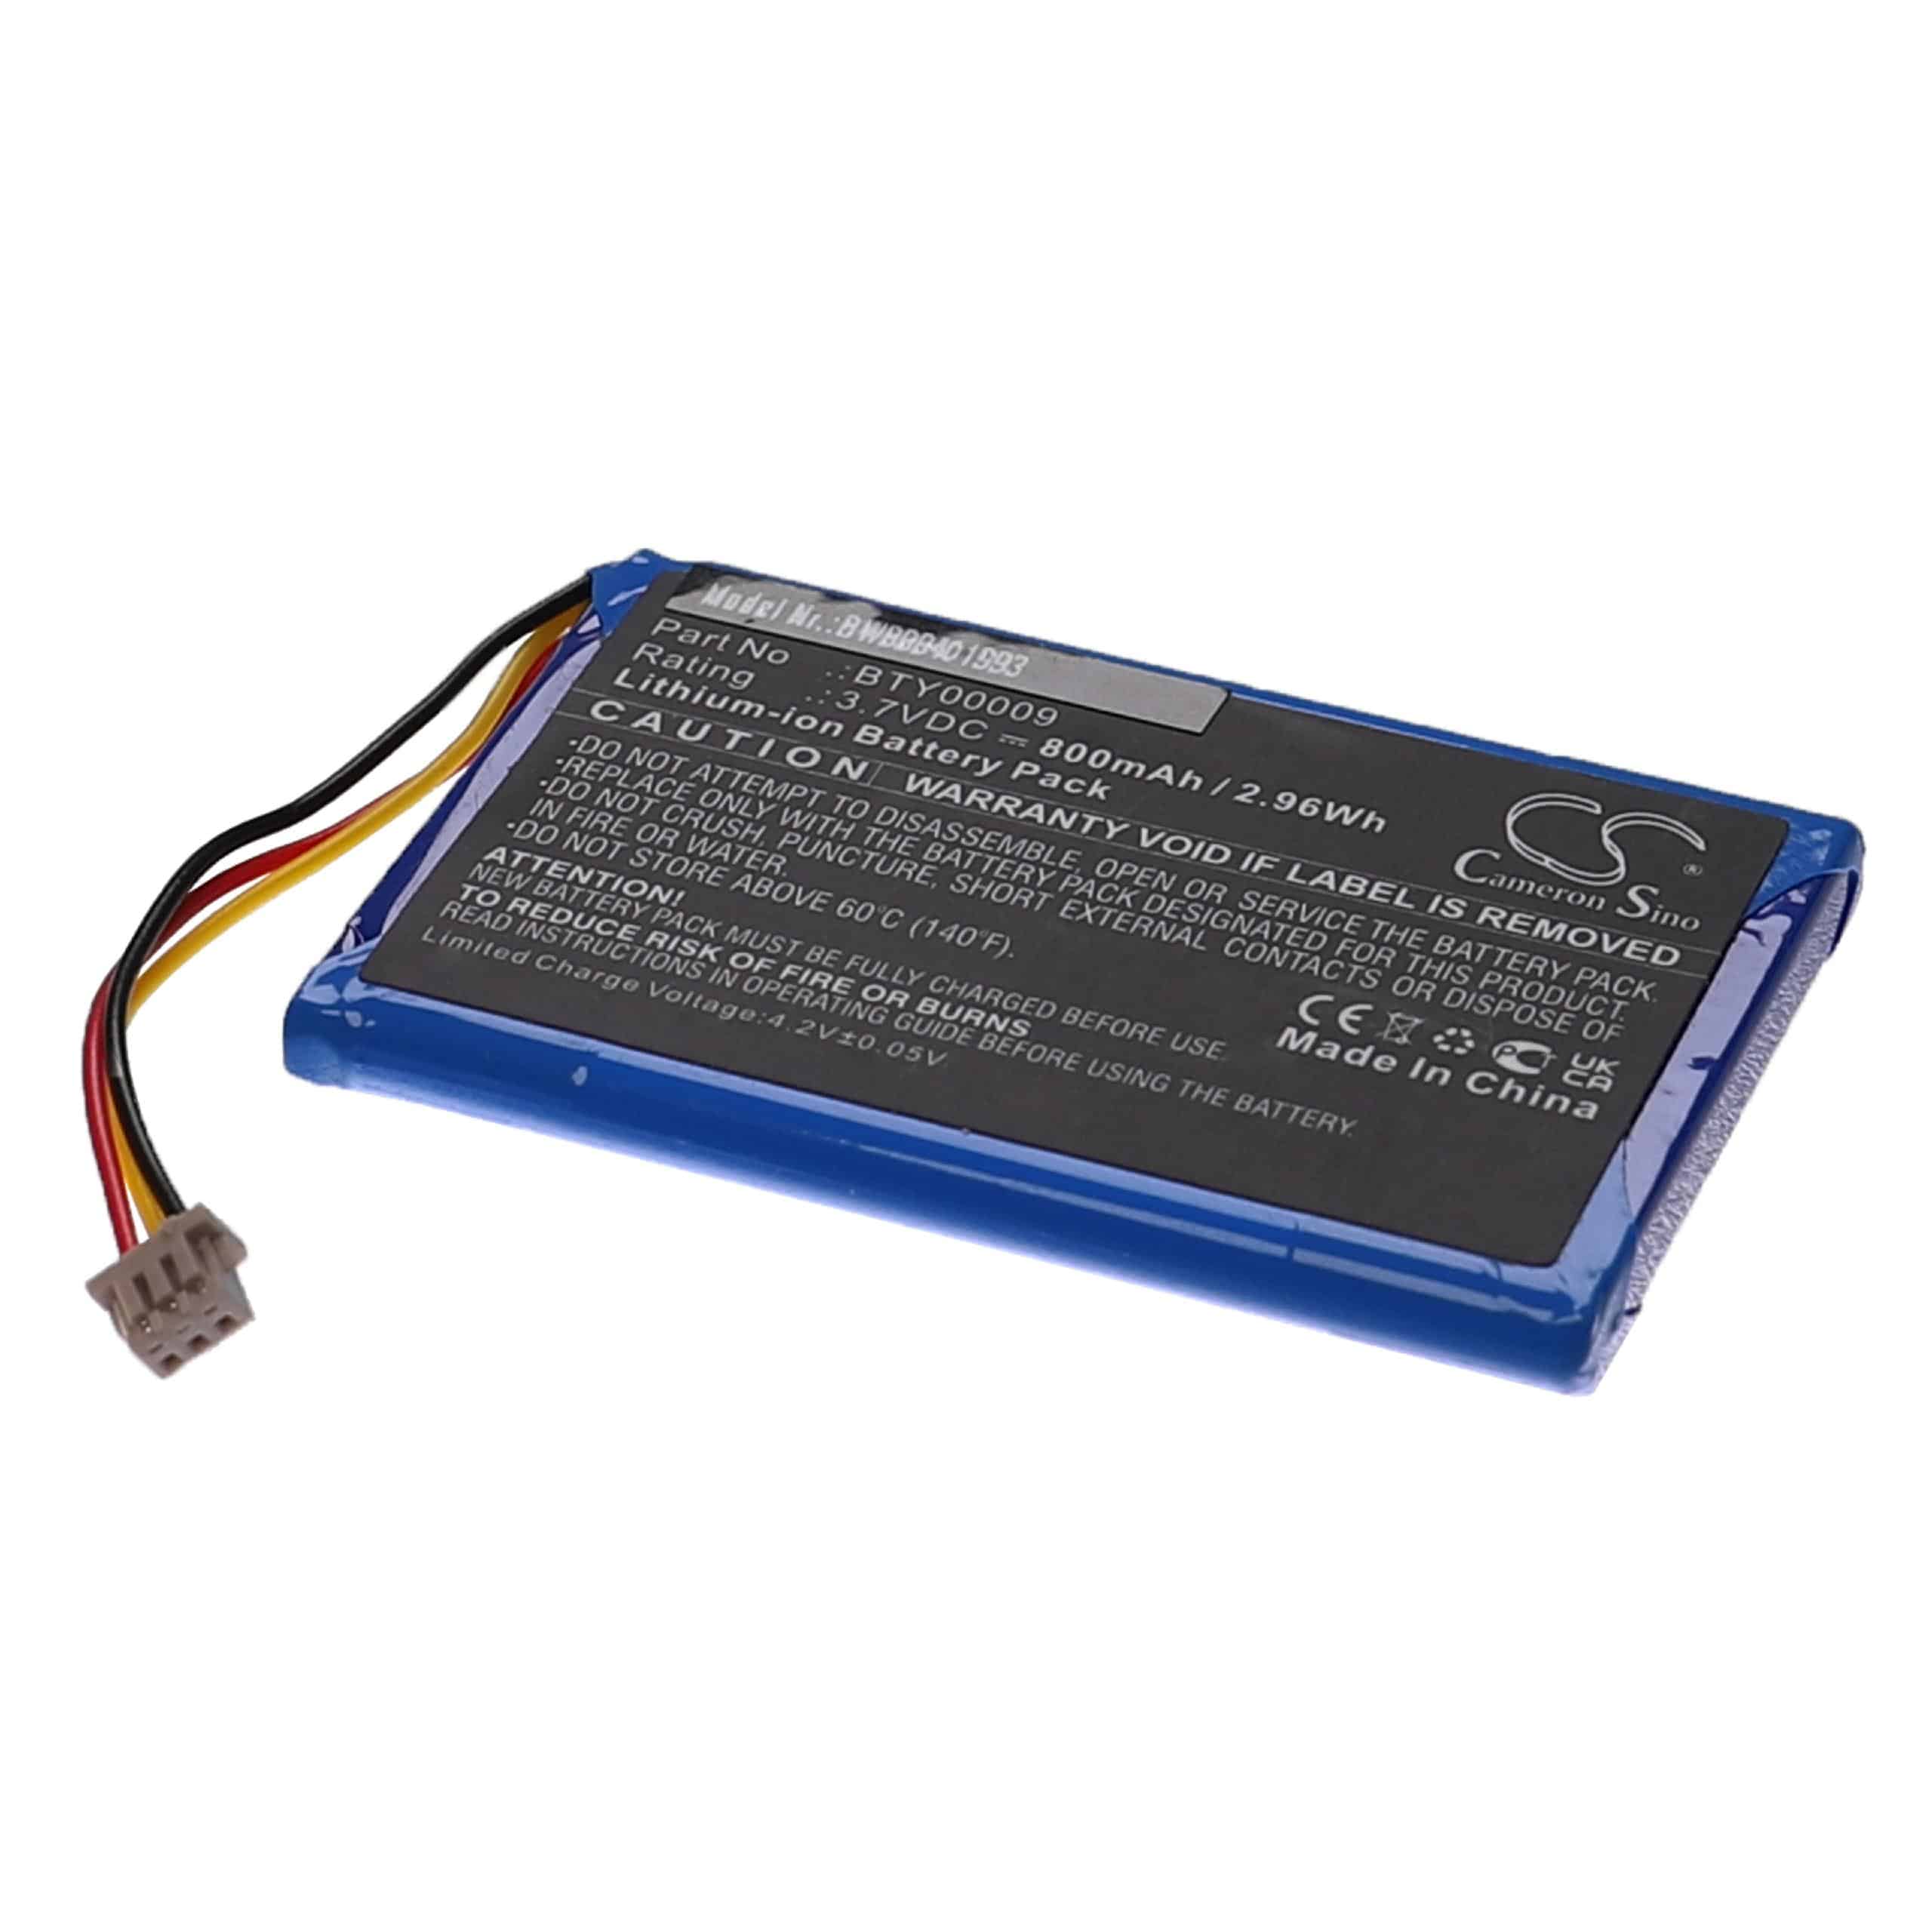 Batería reemplaza Ingenico BTY00009, FPS16020002419 para lector de tarjetas Ingenico - 800 mAh 3,7 V Li-Ion